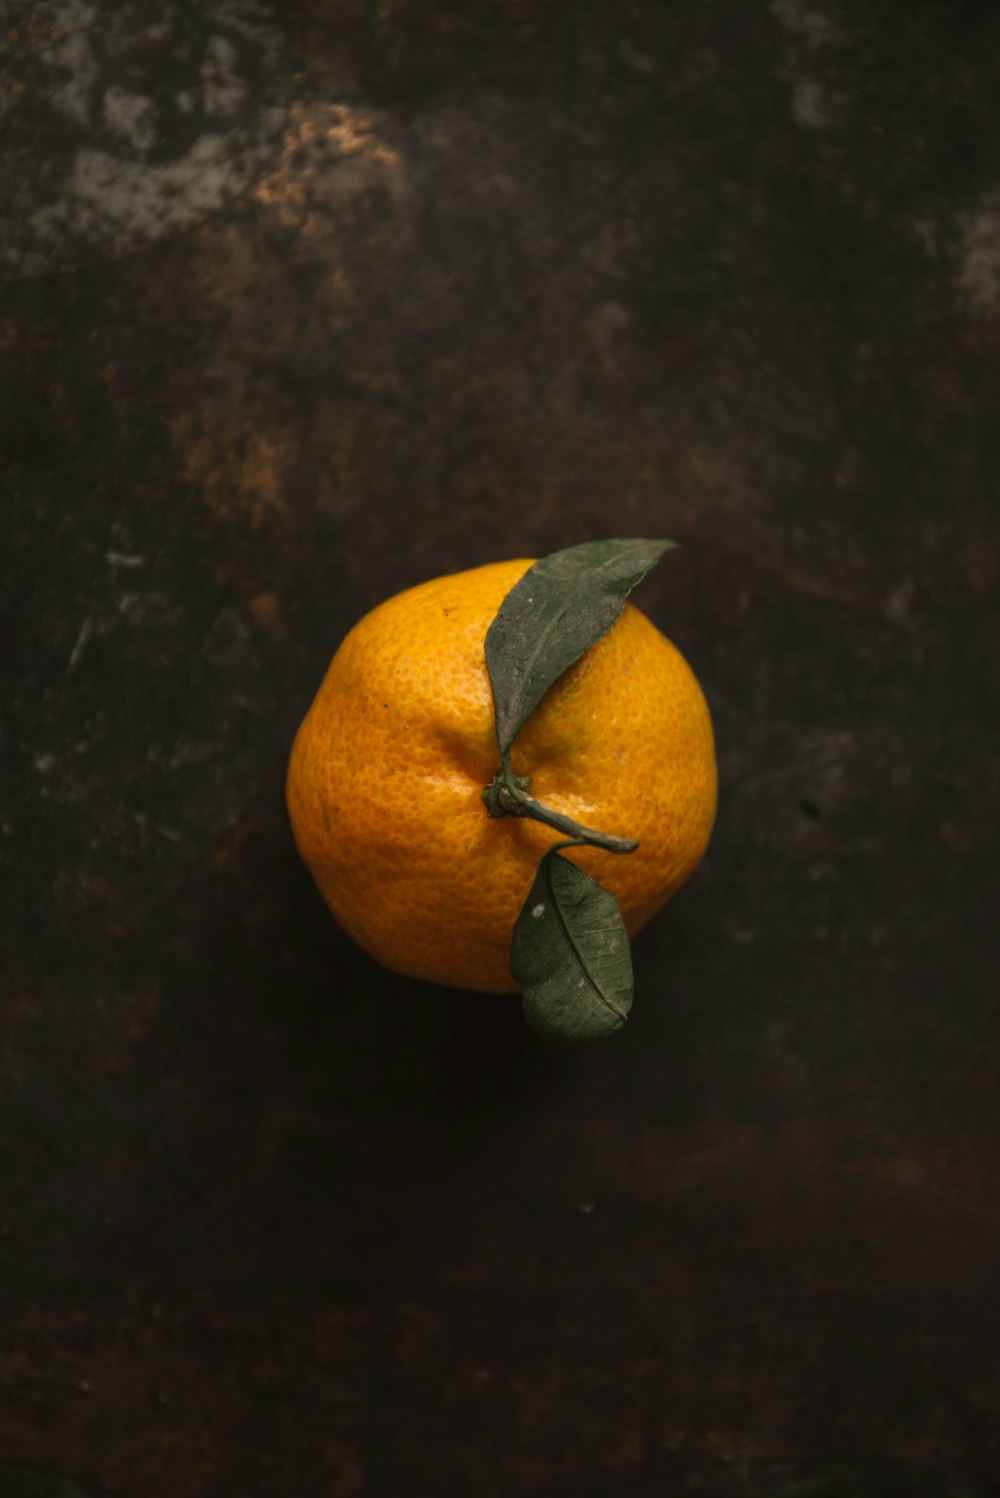 Orangenfrucht